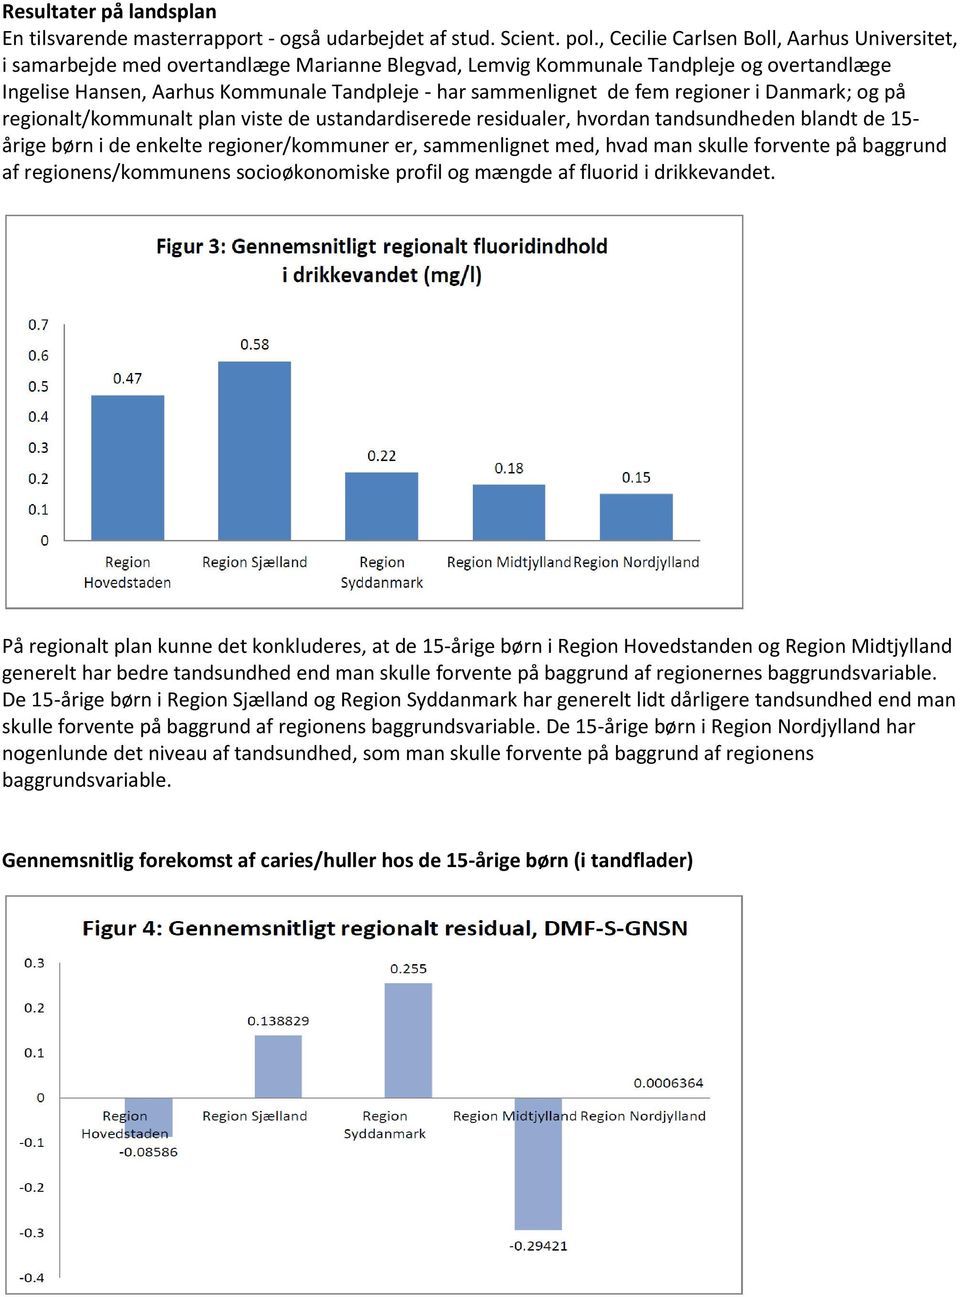 de fem regioner i Danmark; og på regionalt/kommunalt plan viste de ustandardiserede residualer, hvordan tandsundheden blandt de 15- årige børn i de enkelte regioner/kommuner er, sammenlignet med,